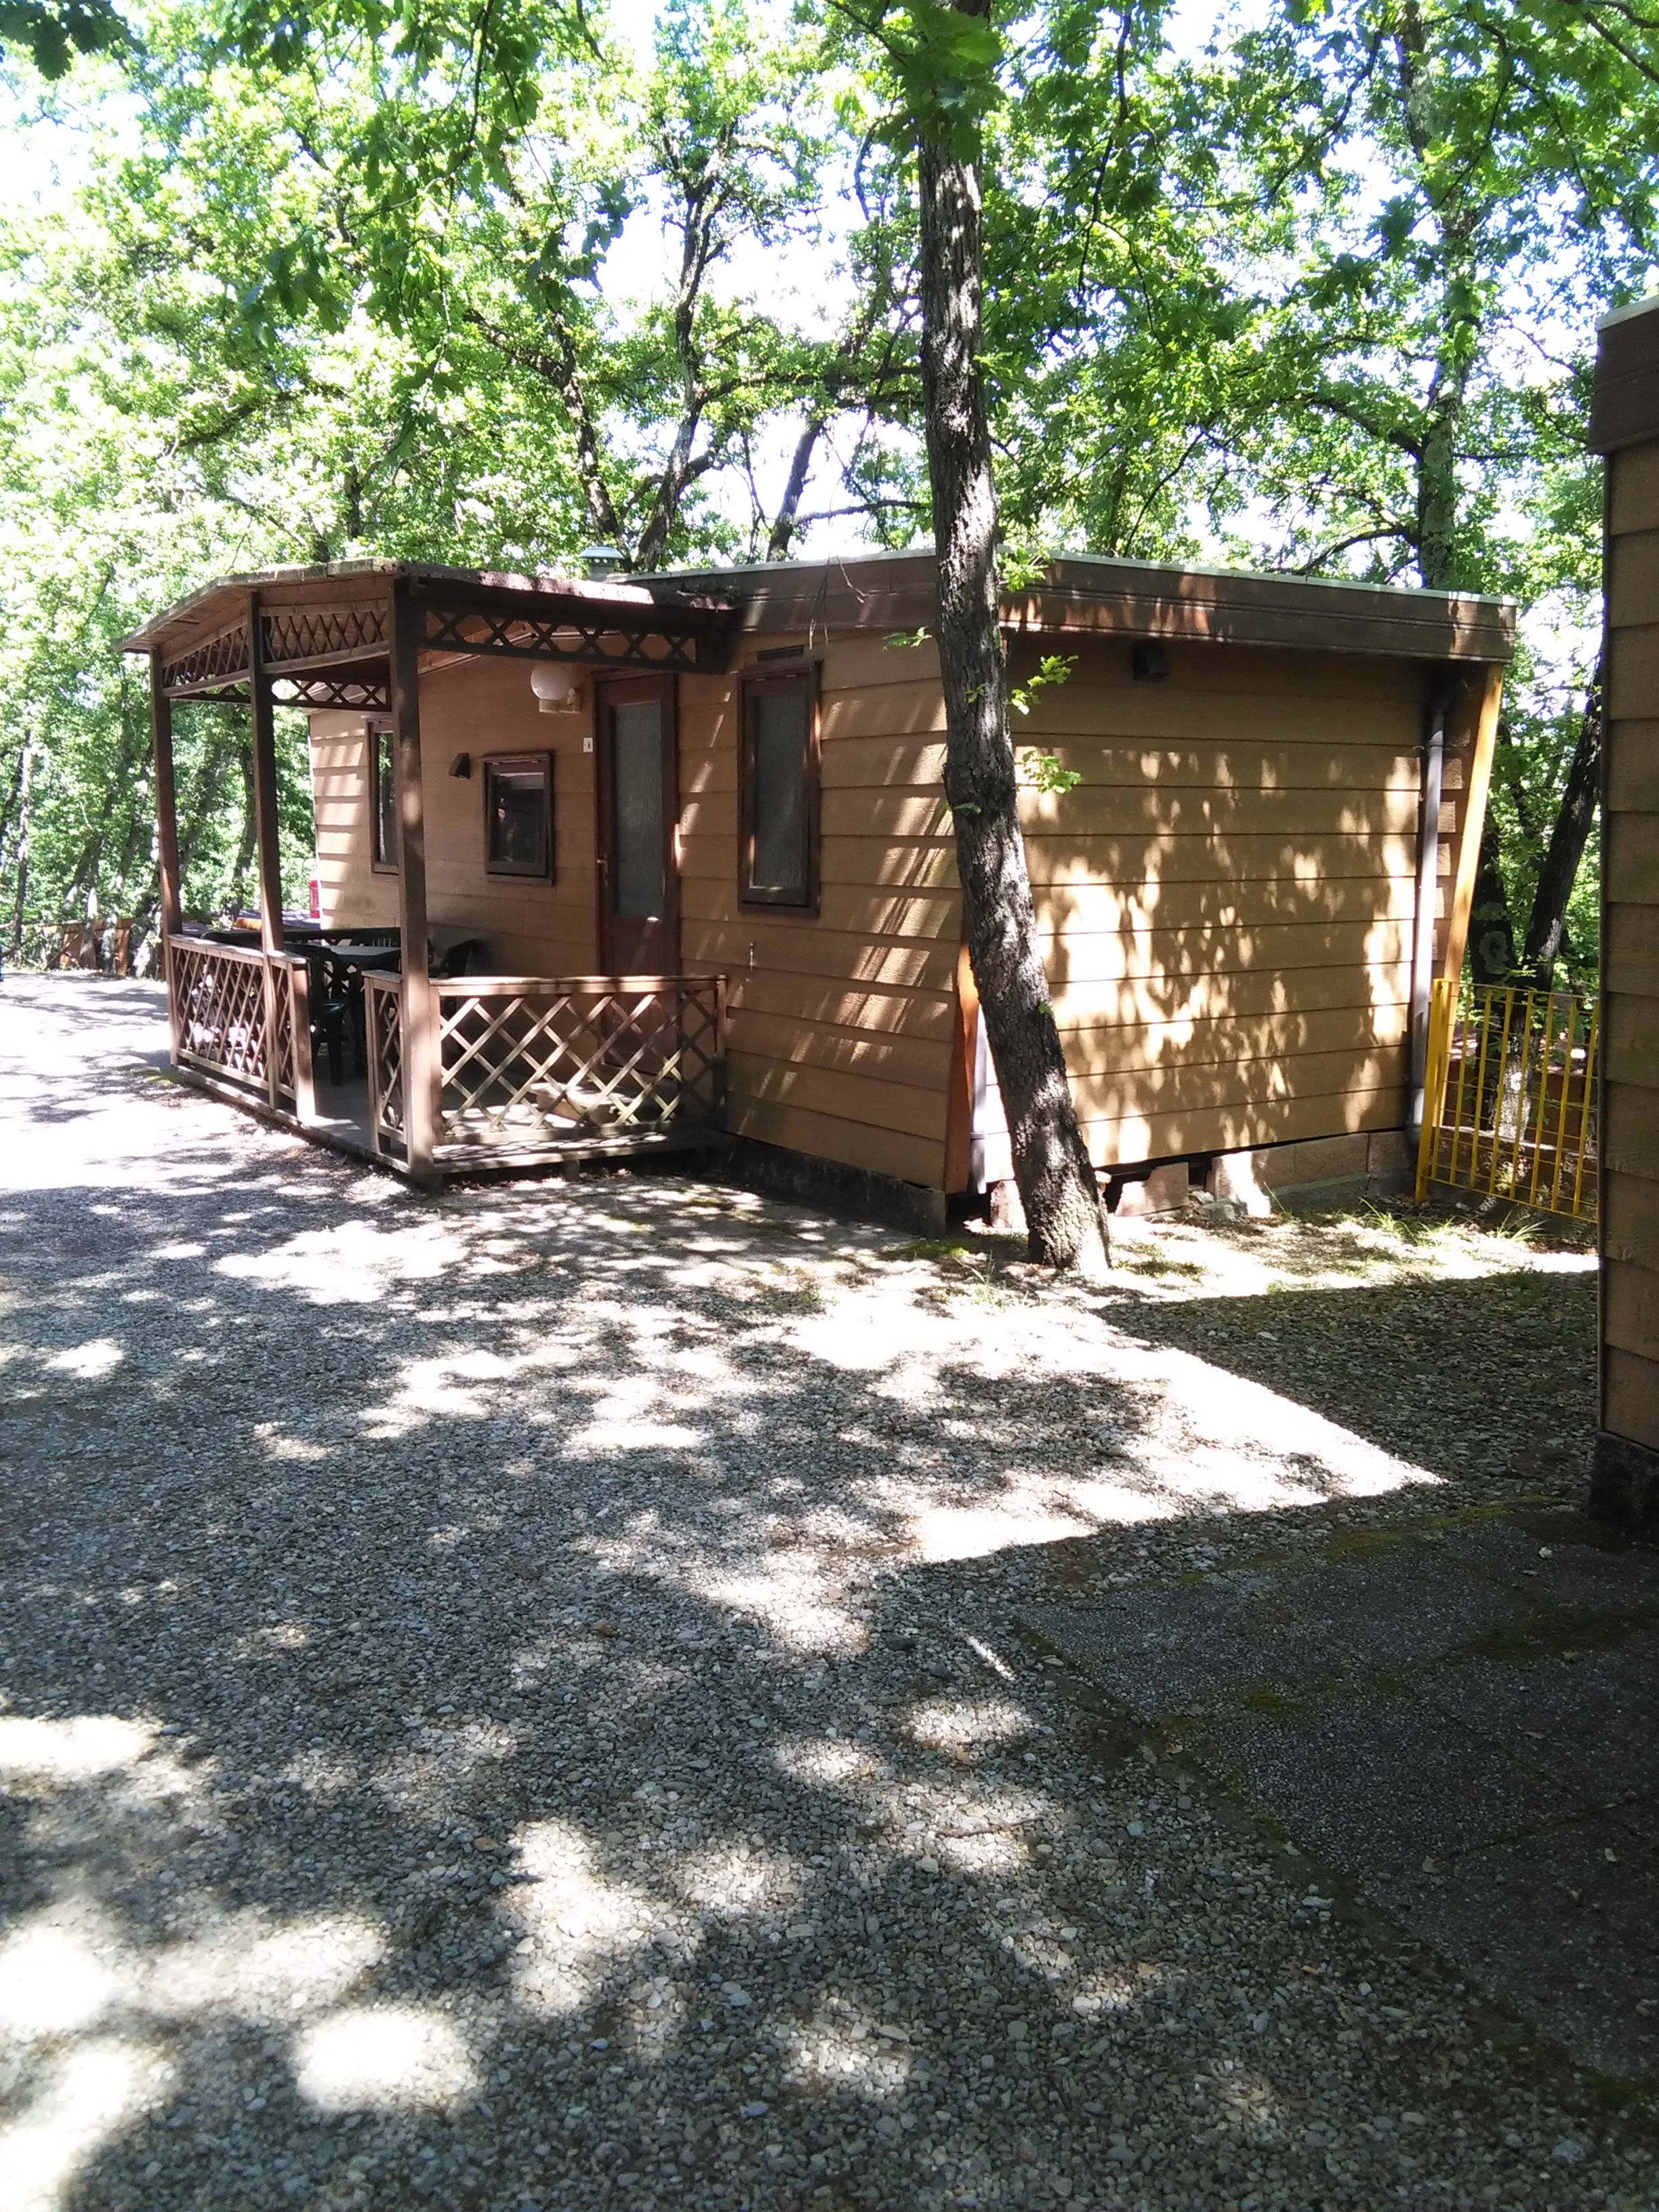 Allotjament - Casa Móvil Standard - Camping Village Internazionale Firenze